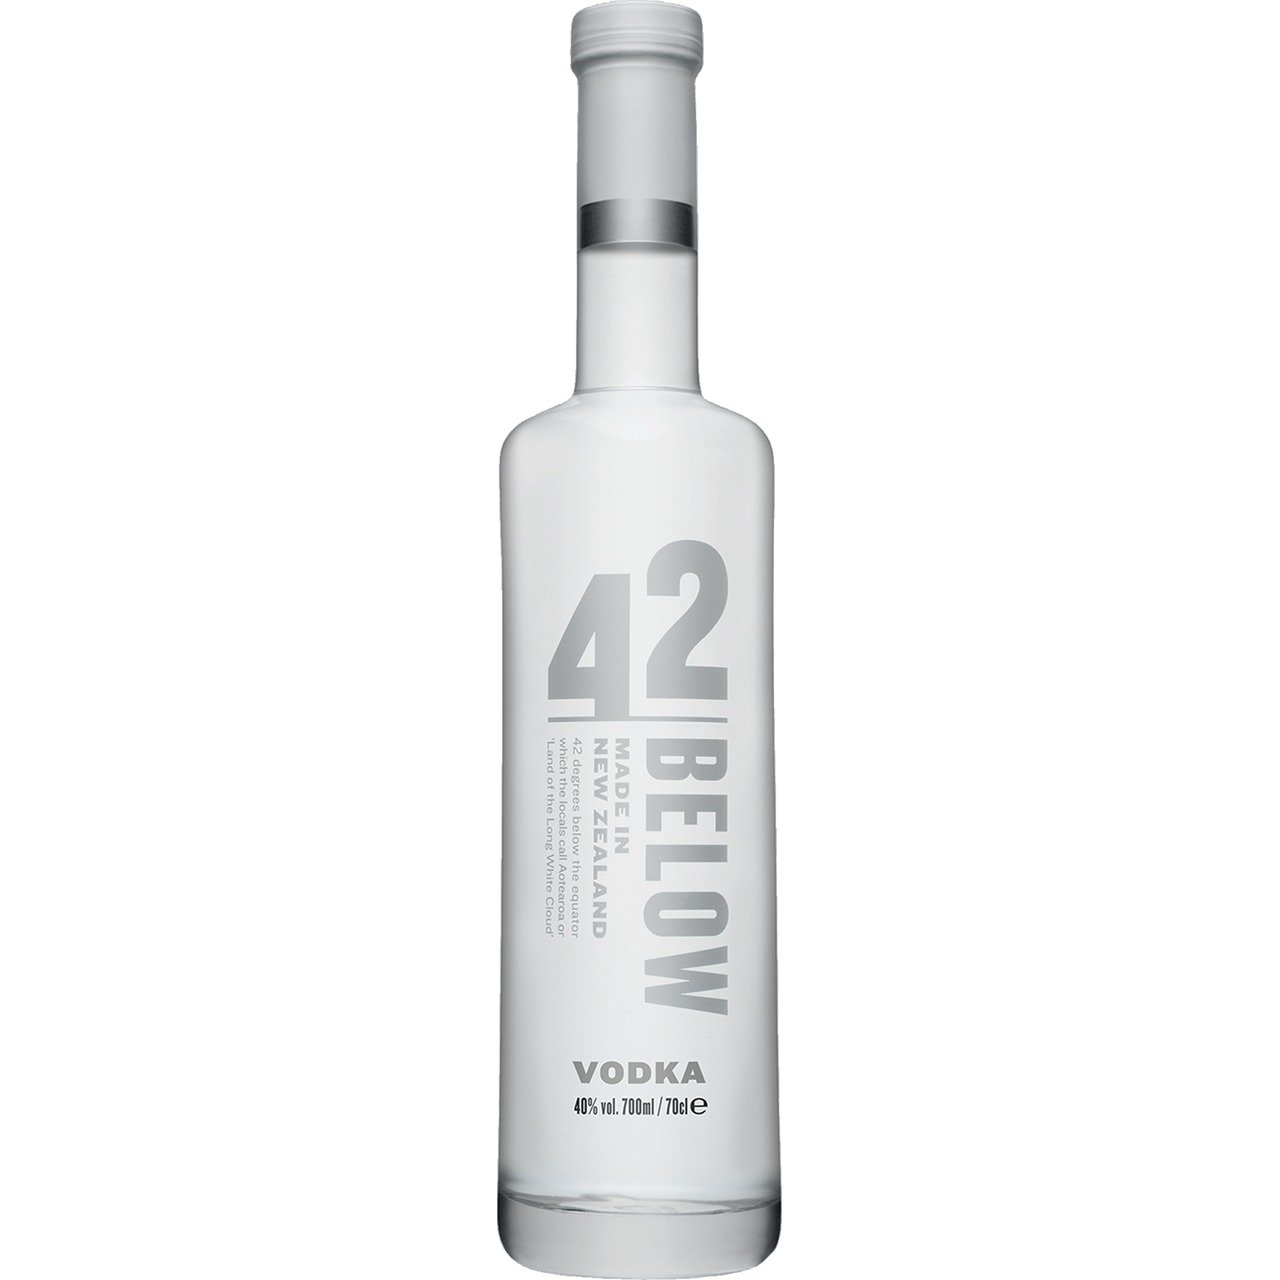 Danzka Premium Vol. Vodka 40% ORIGINAL 1l Distilled